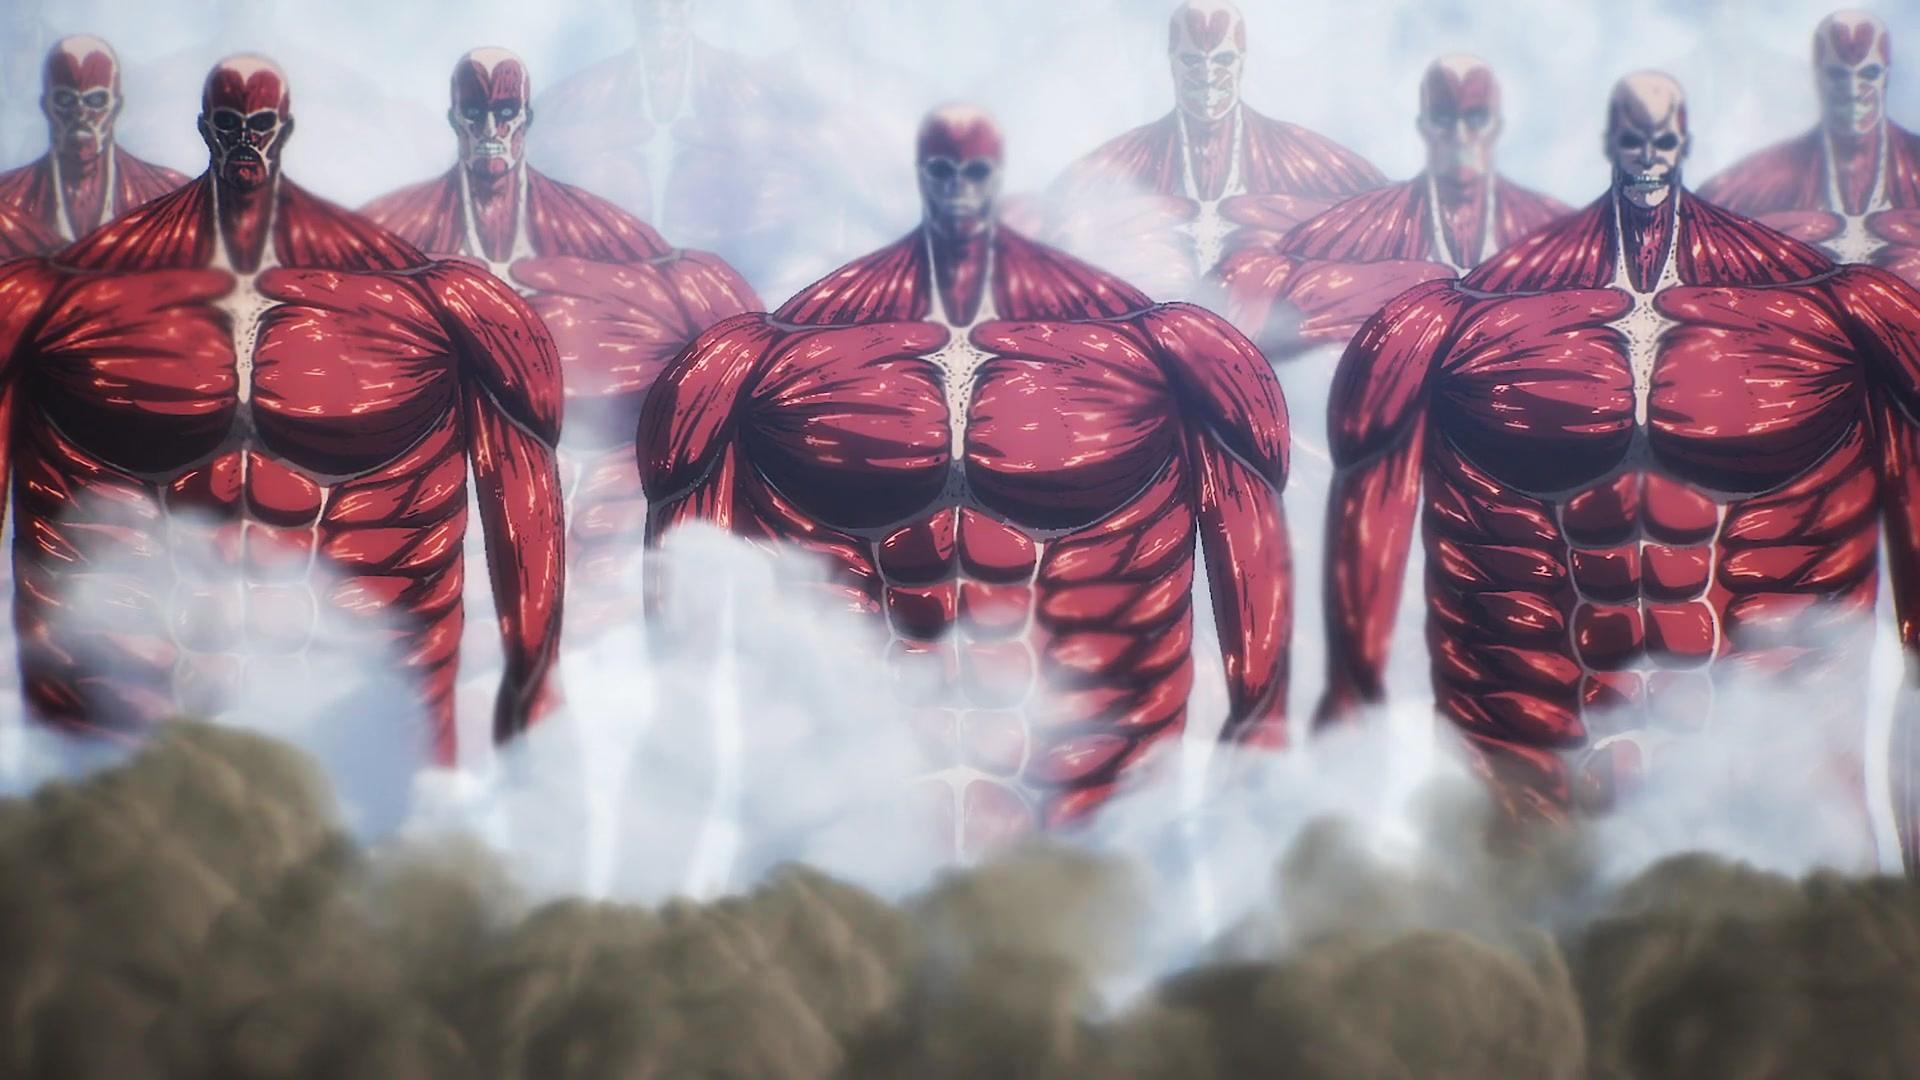 Primeiras Impressões: Shingeki no Kyojin 4ª temporada - Anime United